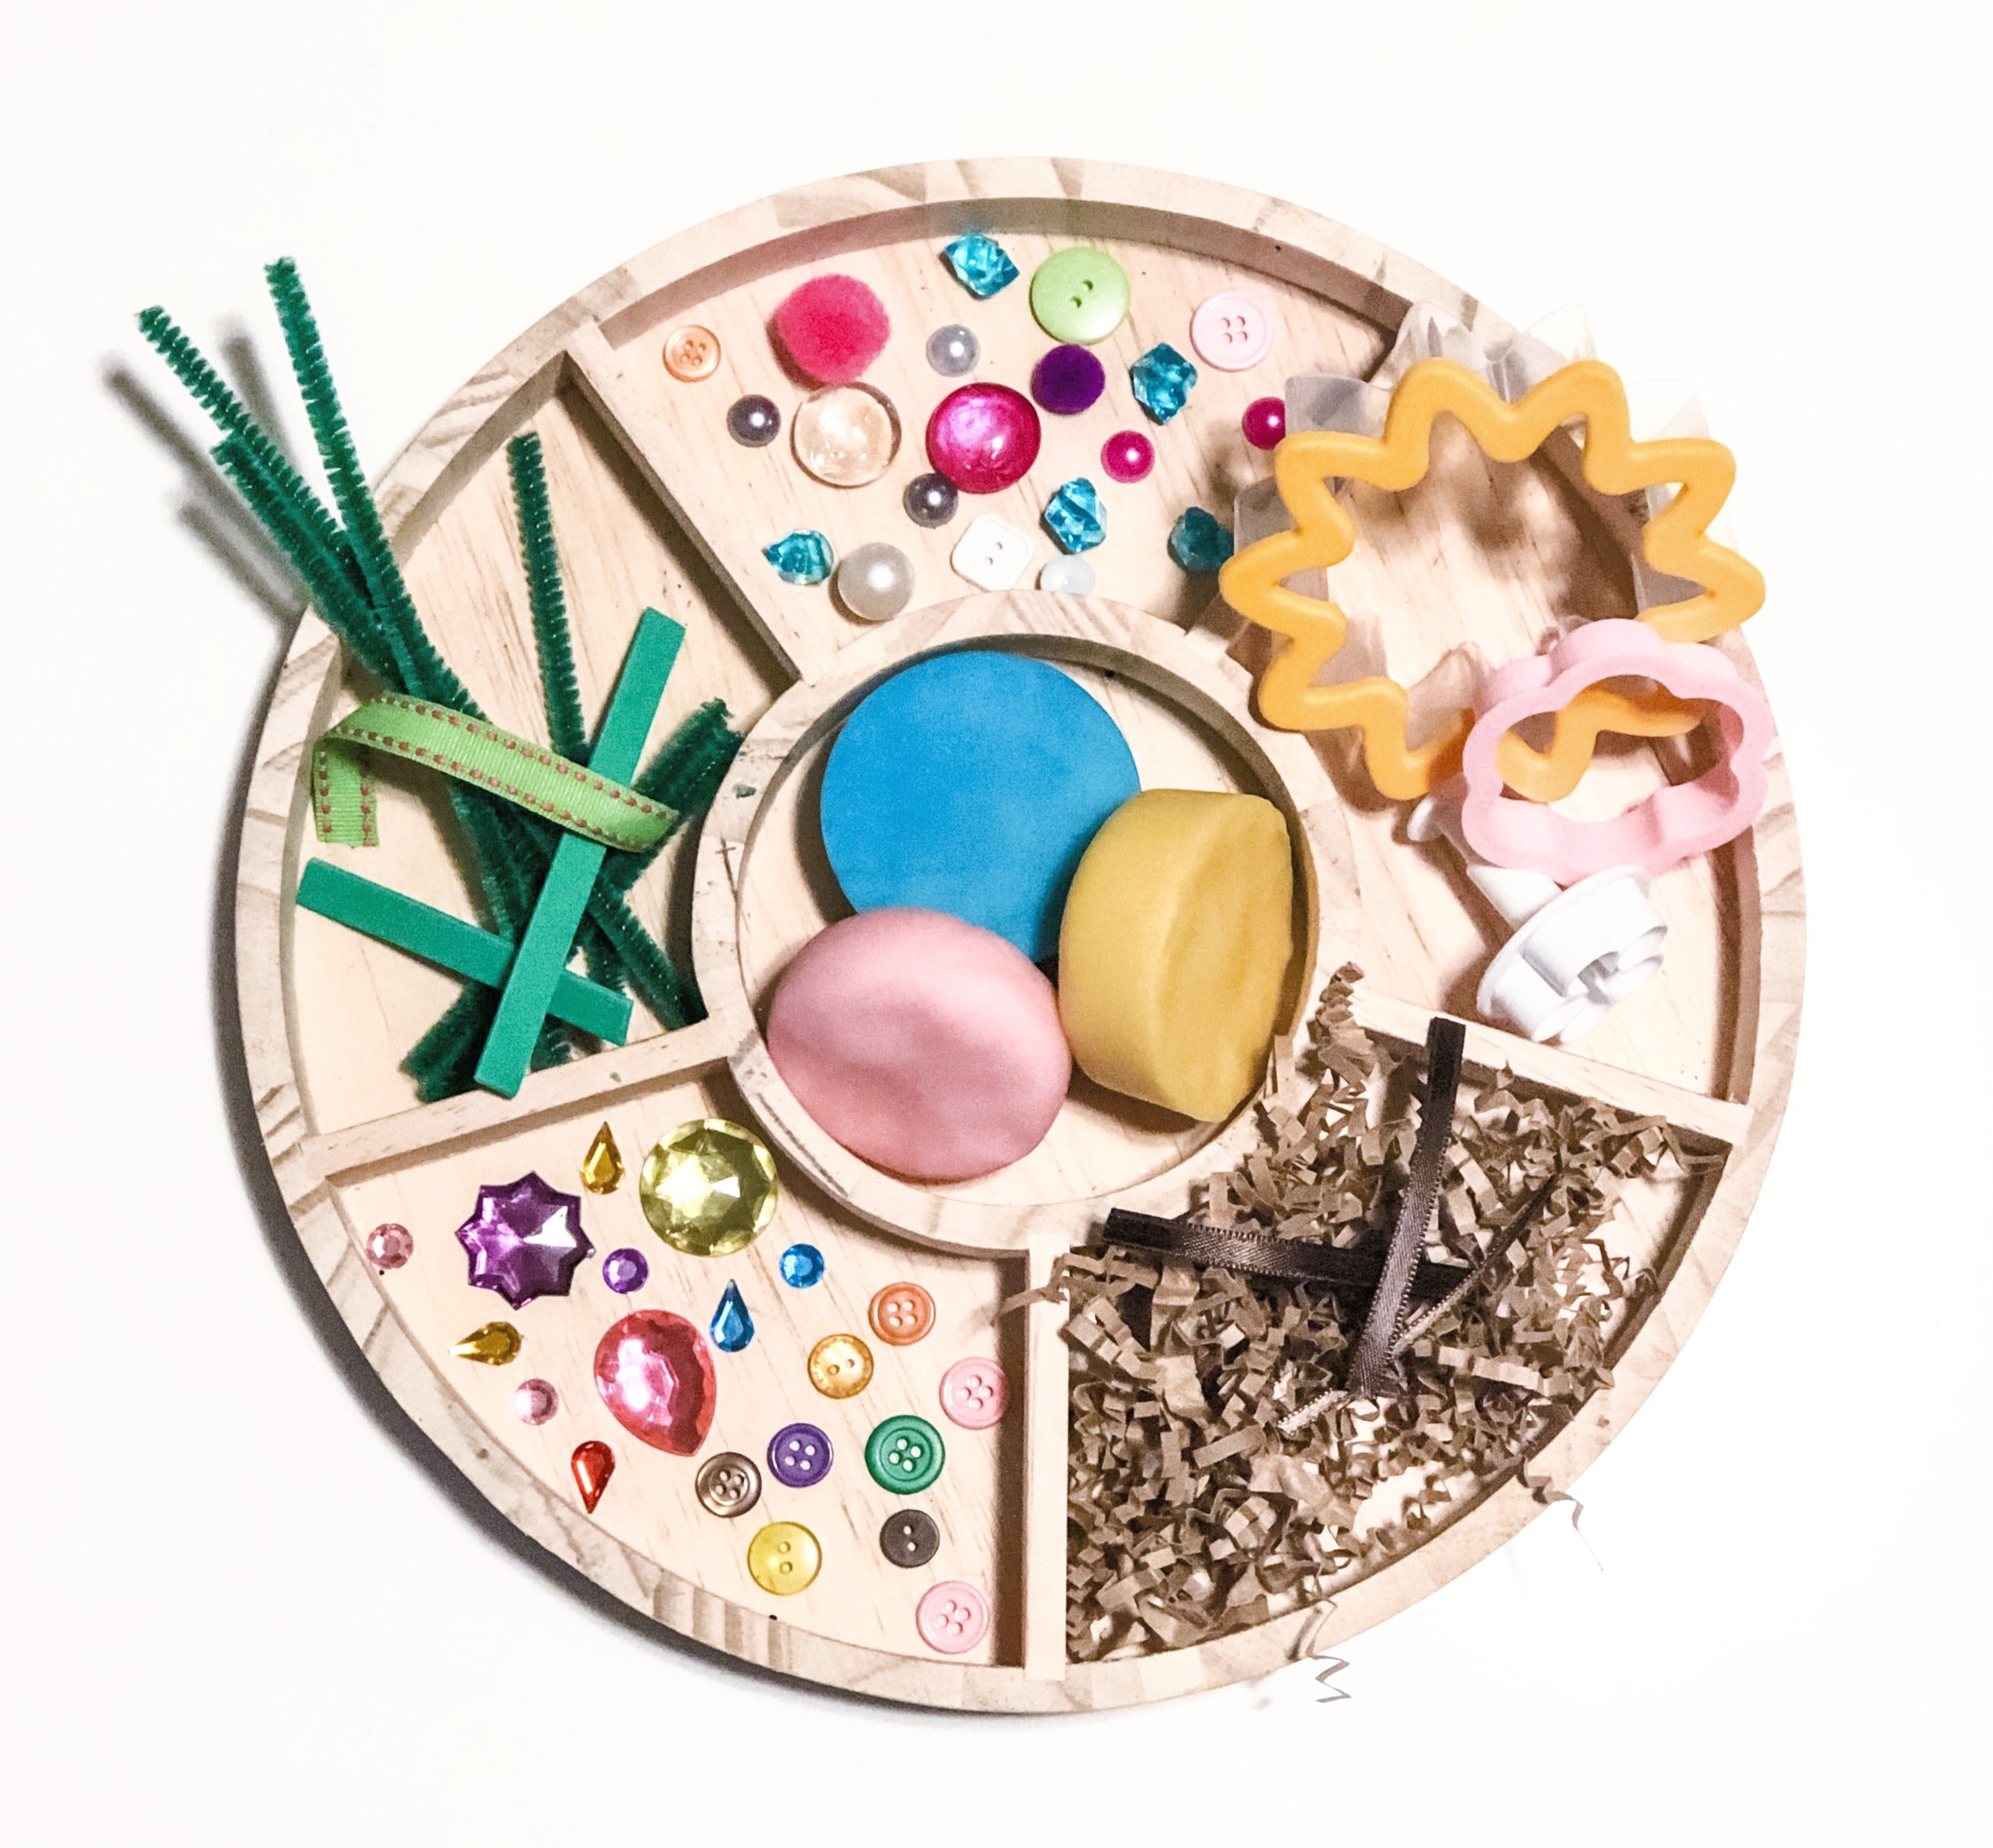 Invitation to Create: A Play Dough Garden